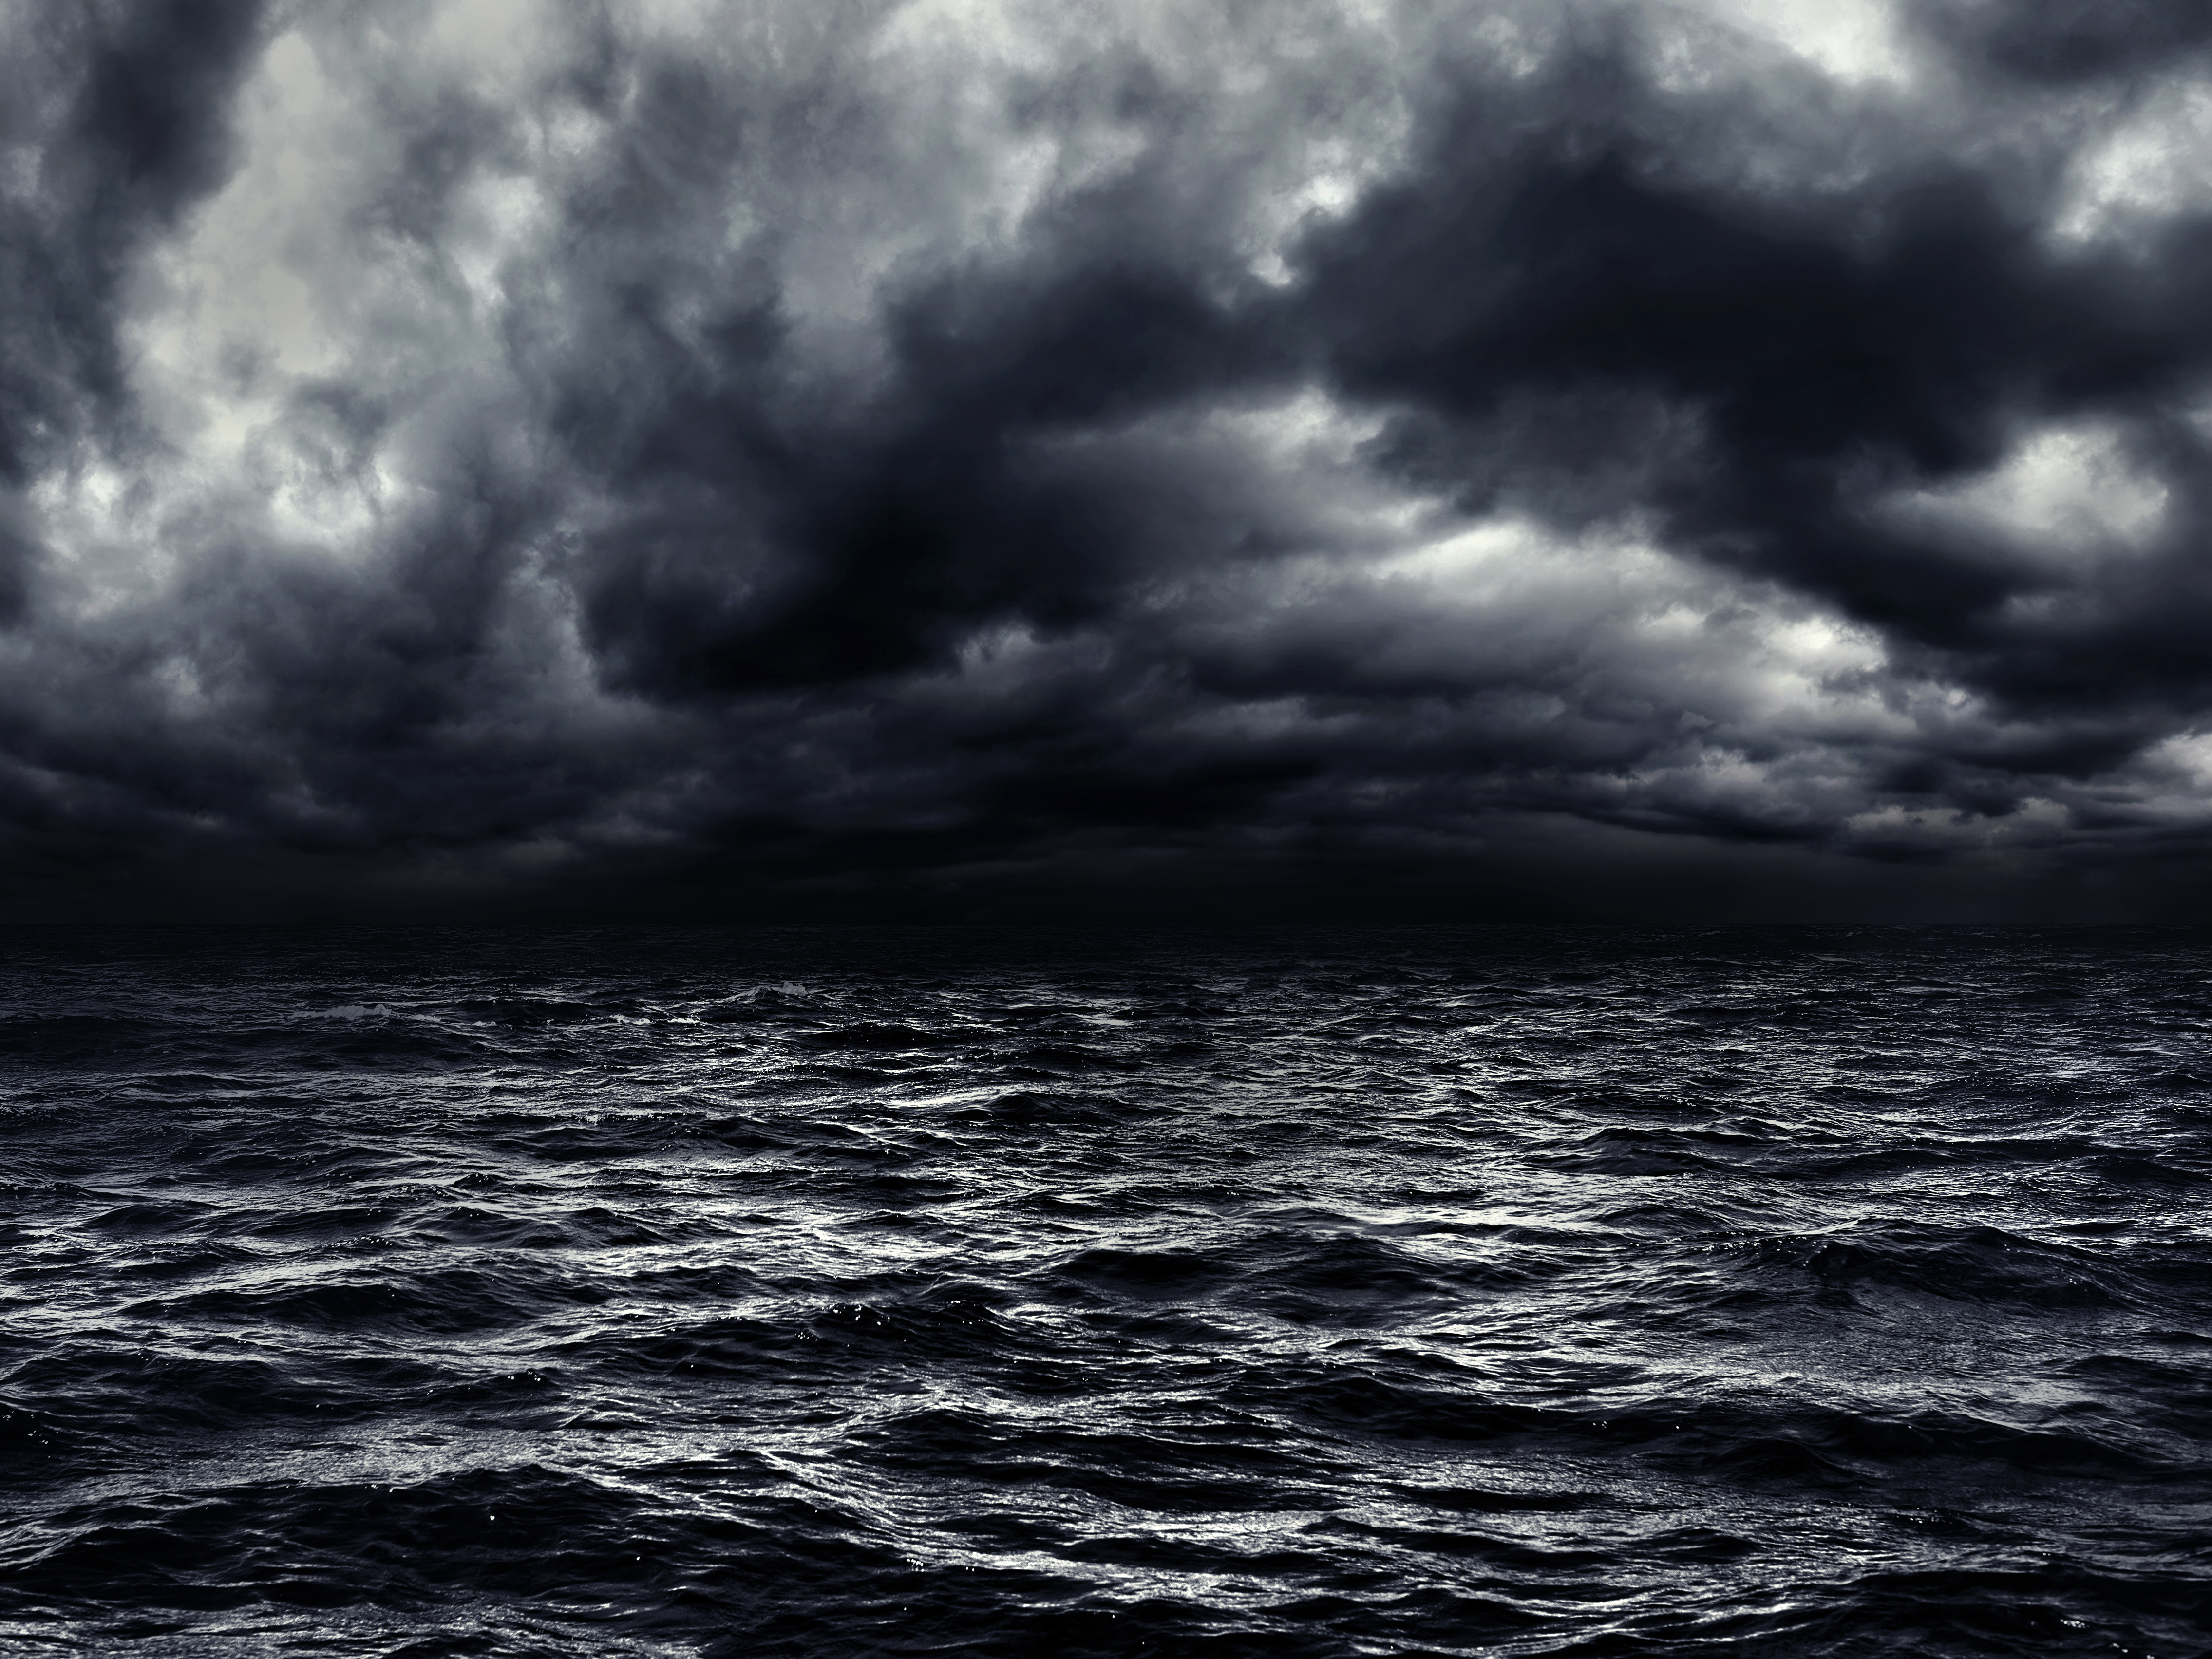 Dunkle stürmische See mit dramatisch bewölktem Himmel. | Quelle: Shutterstock